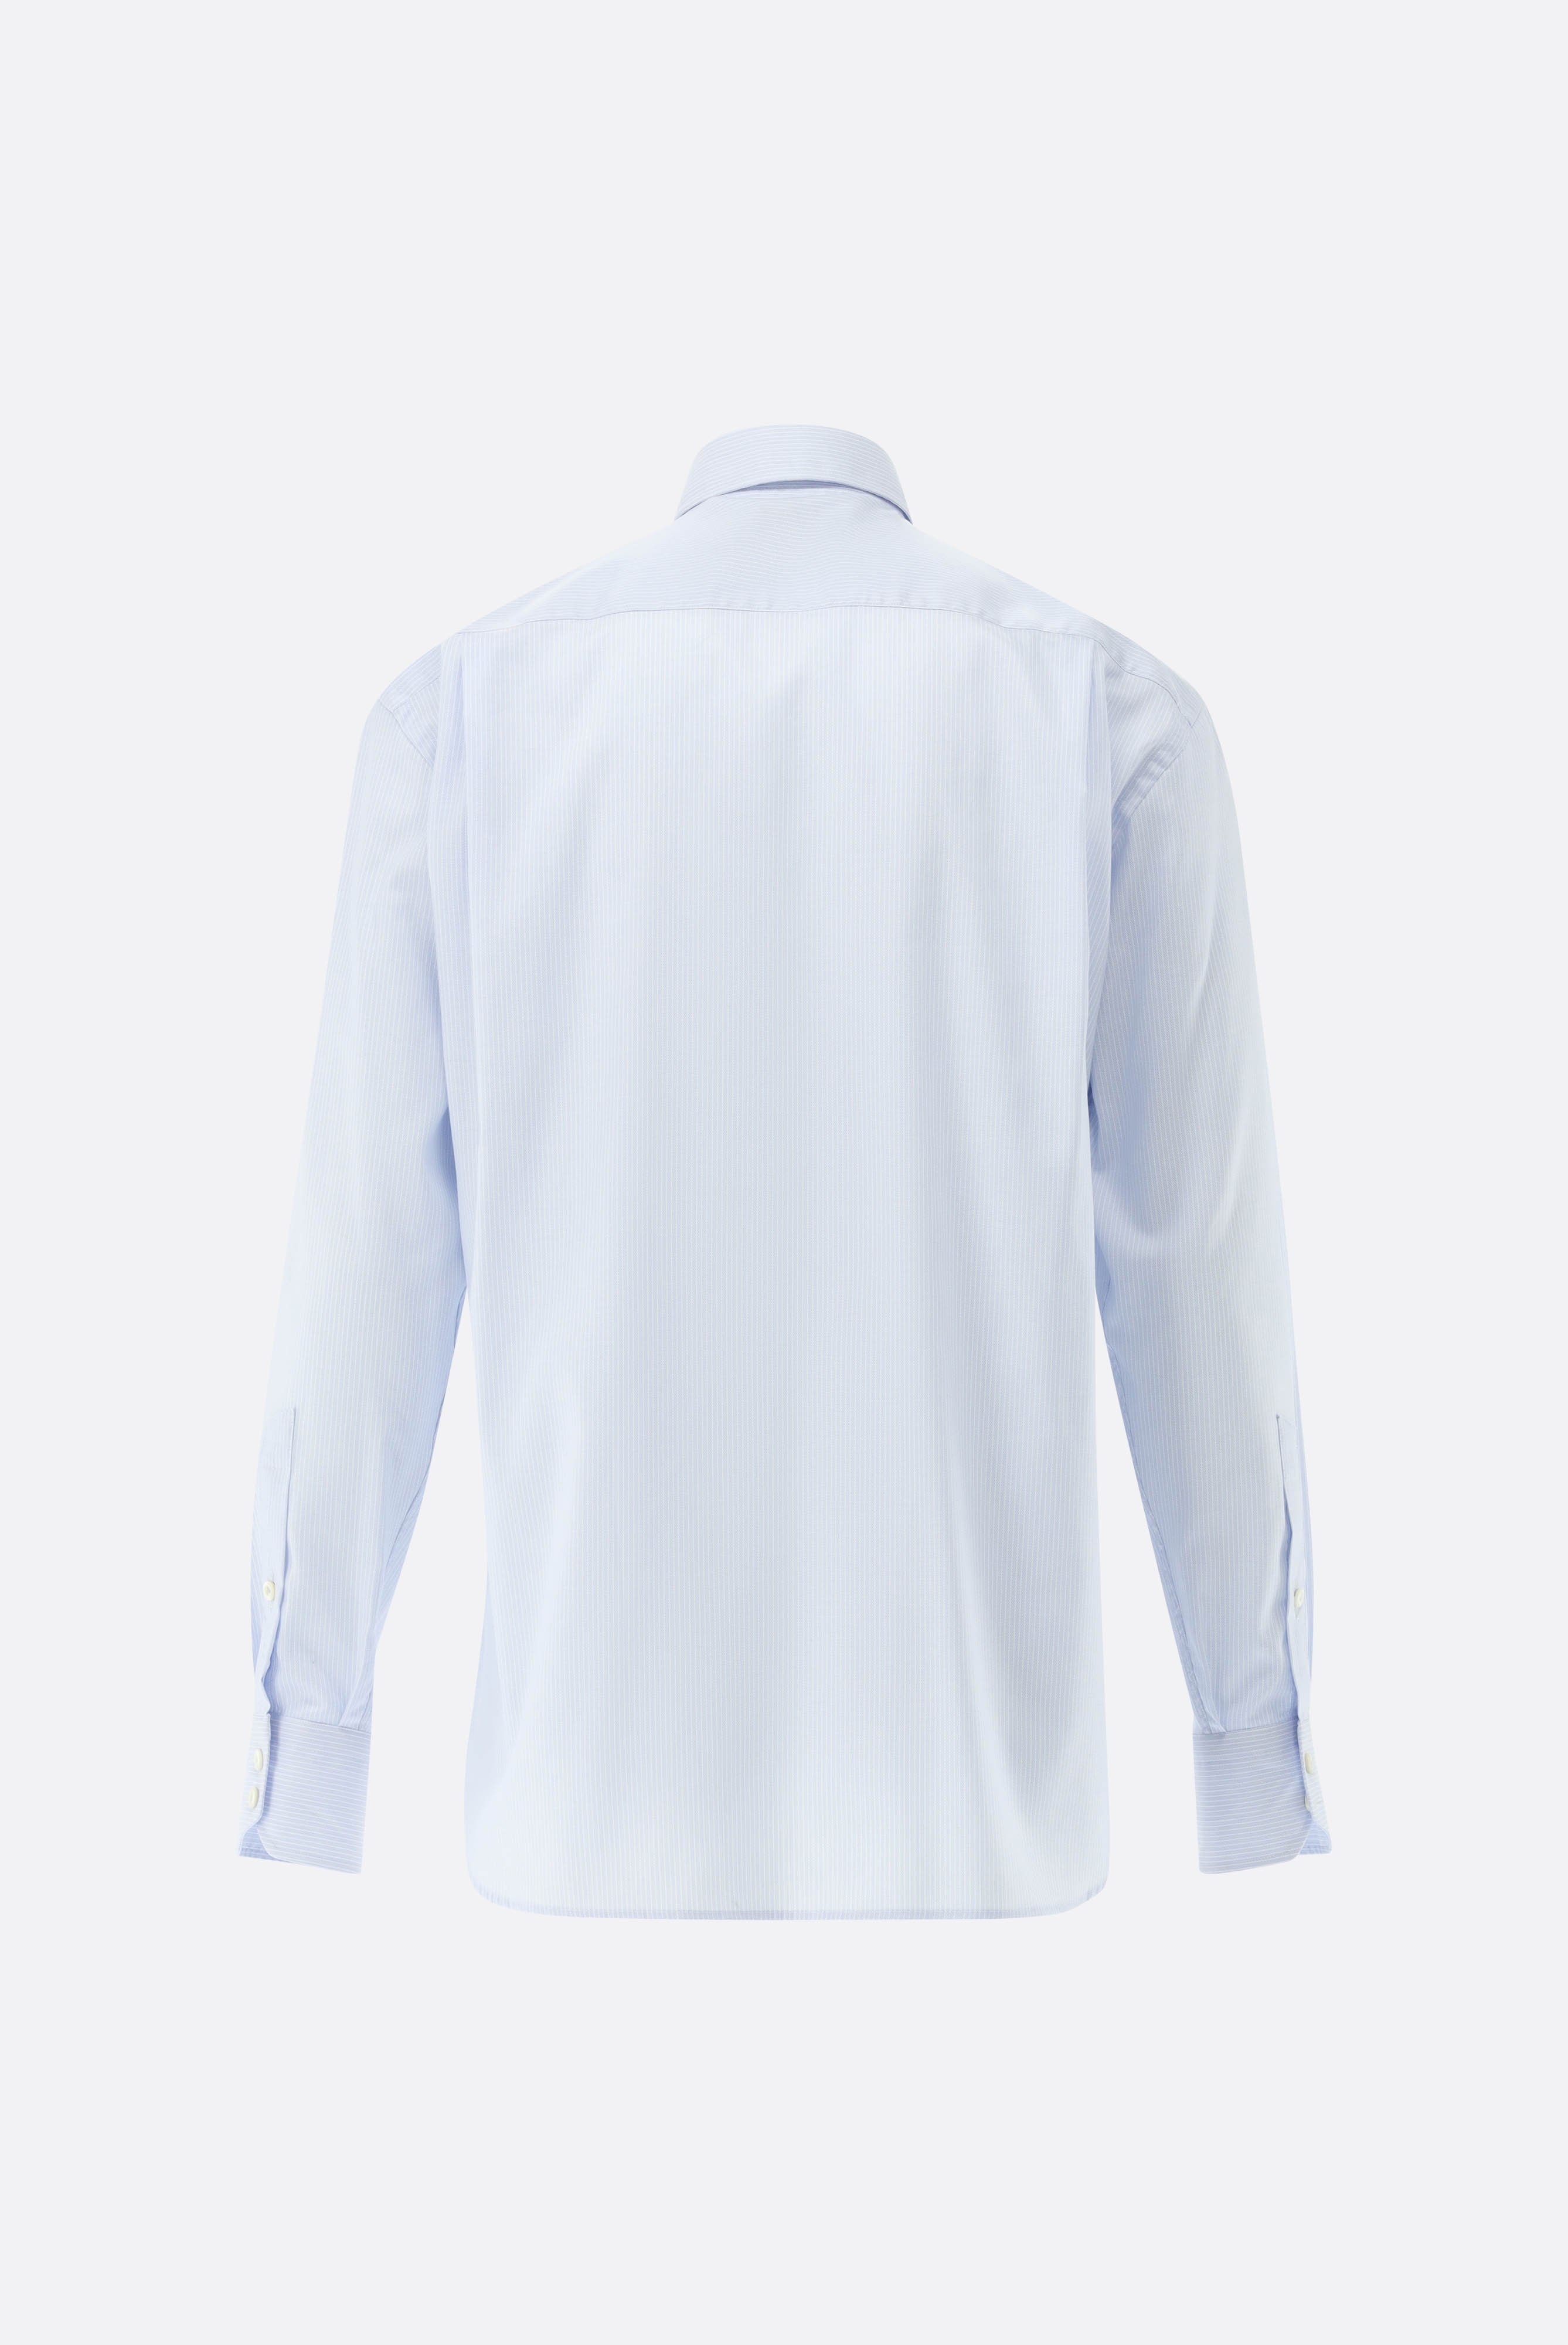 Bügelleichte Hemden+Bügelfreies Hemd mit Streifen Comfort Fit+20.2026.BQ.161109.710.42